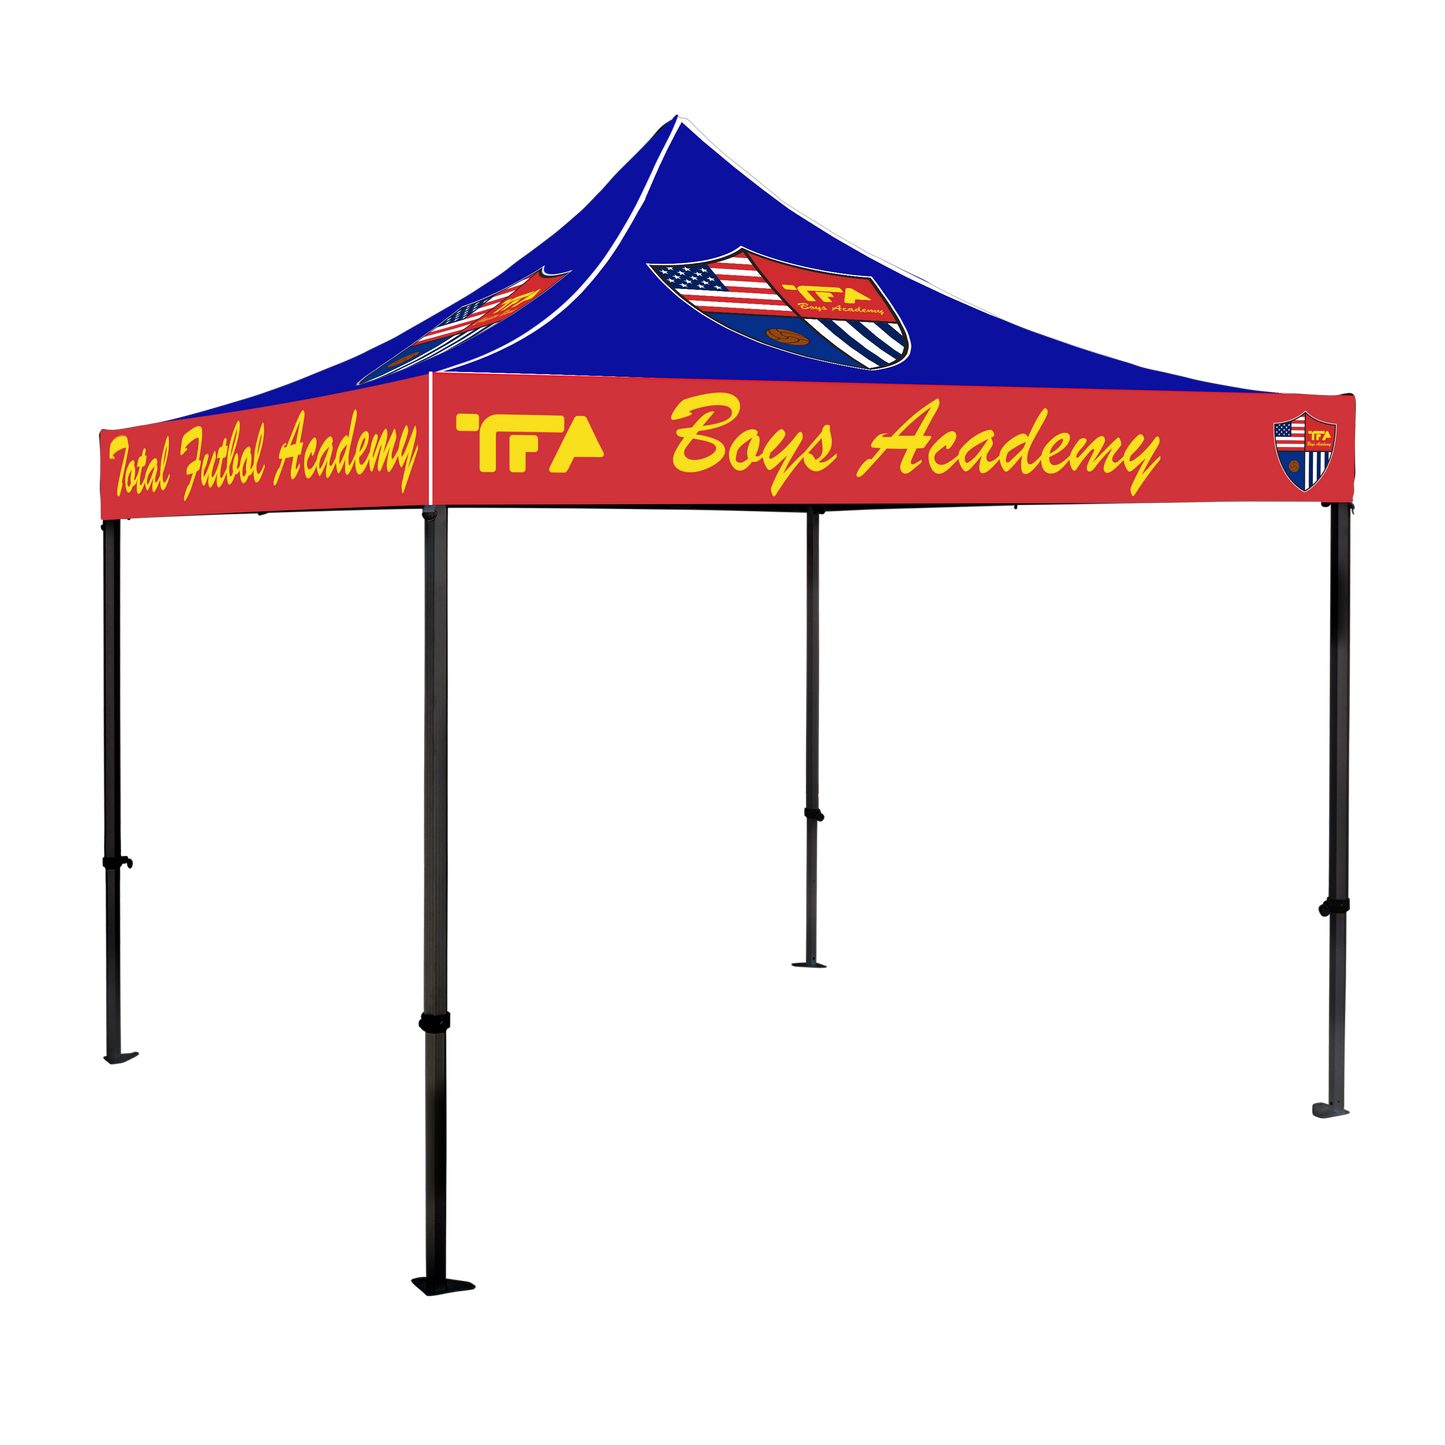 TFA Boys Academy 10x10 Canopy Kit